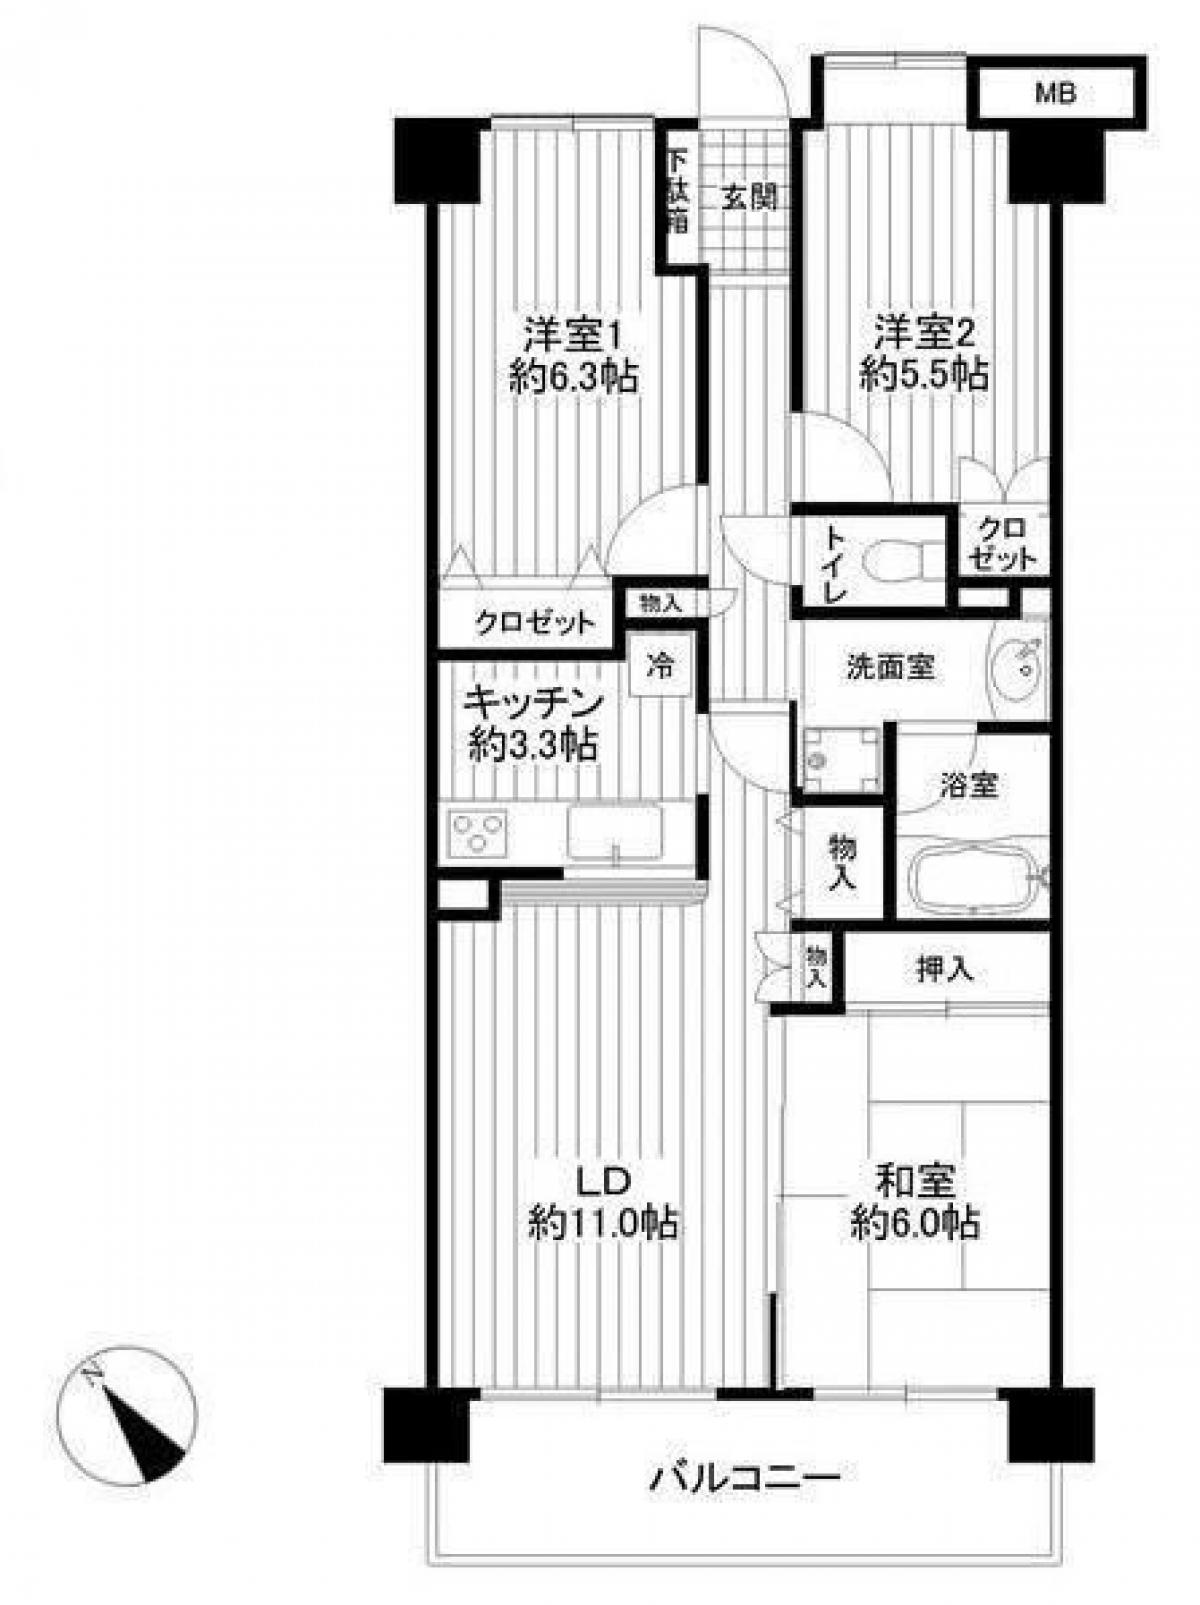 Picture of Apartment For Sale in Yokohama Shi Hodogaya Ku, Kanagawa, Japan